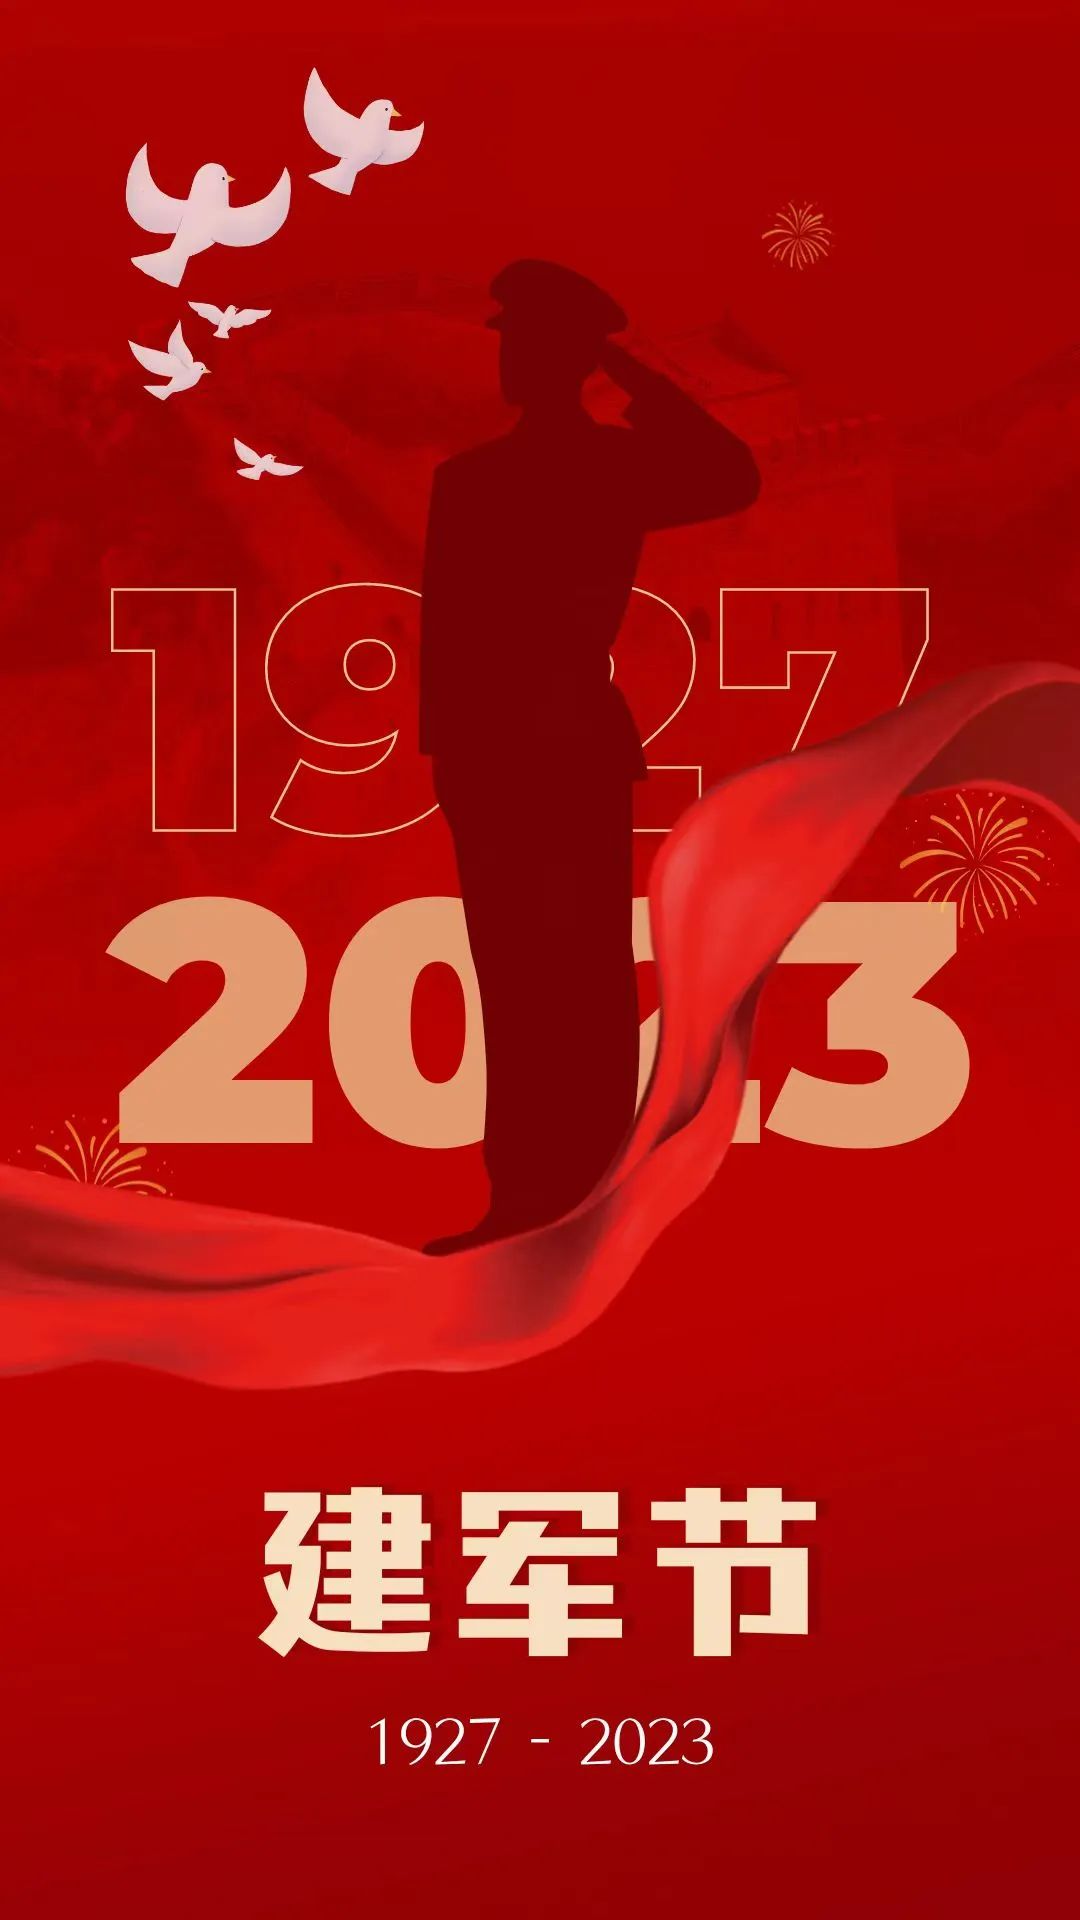 第十一届国际潮青联谊年会筹委会热烈庆祝中国人民解放军建军96周年